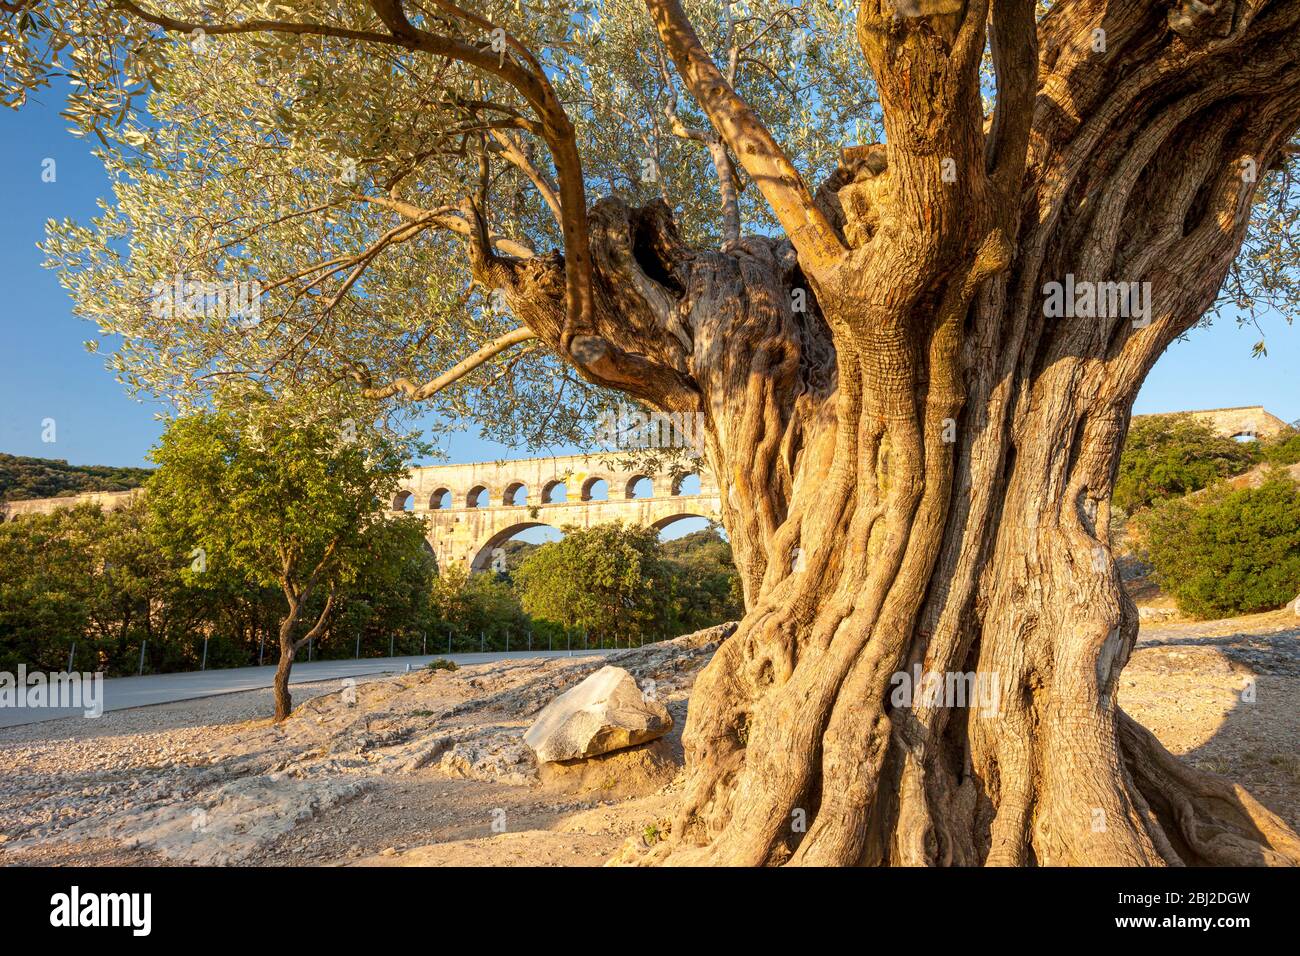 Ancien olivier et aqueduc romain - Pont du Gard près de vers-Pont-du-Gard, Occitanie, France Banque D'Images